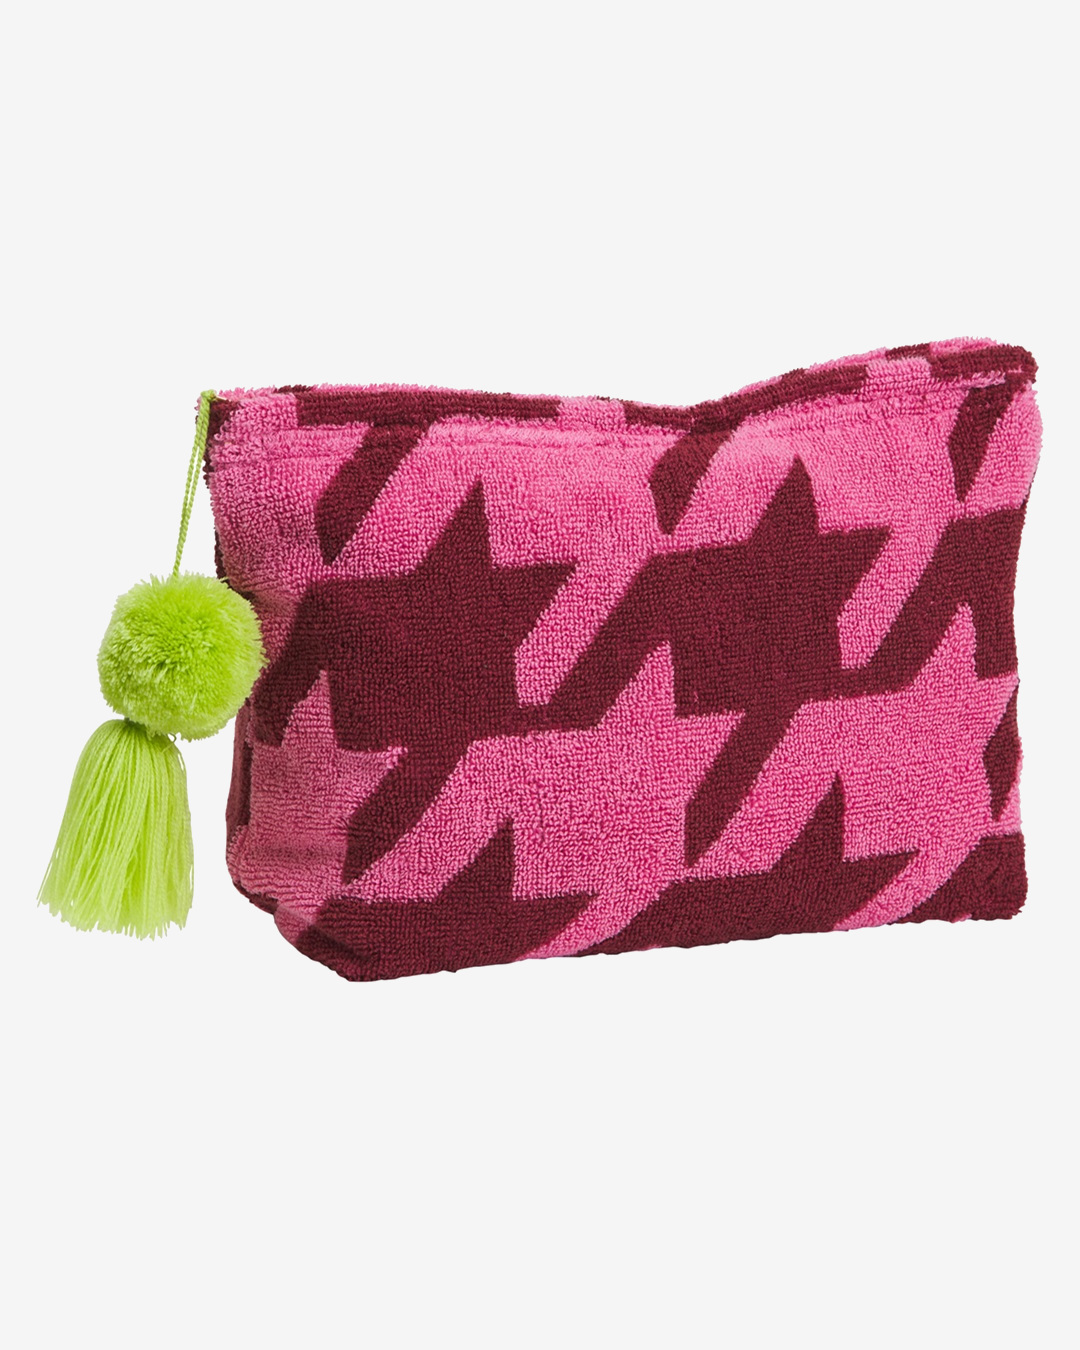 Pink pouch with green pom pom